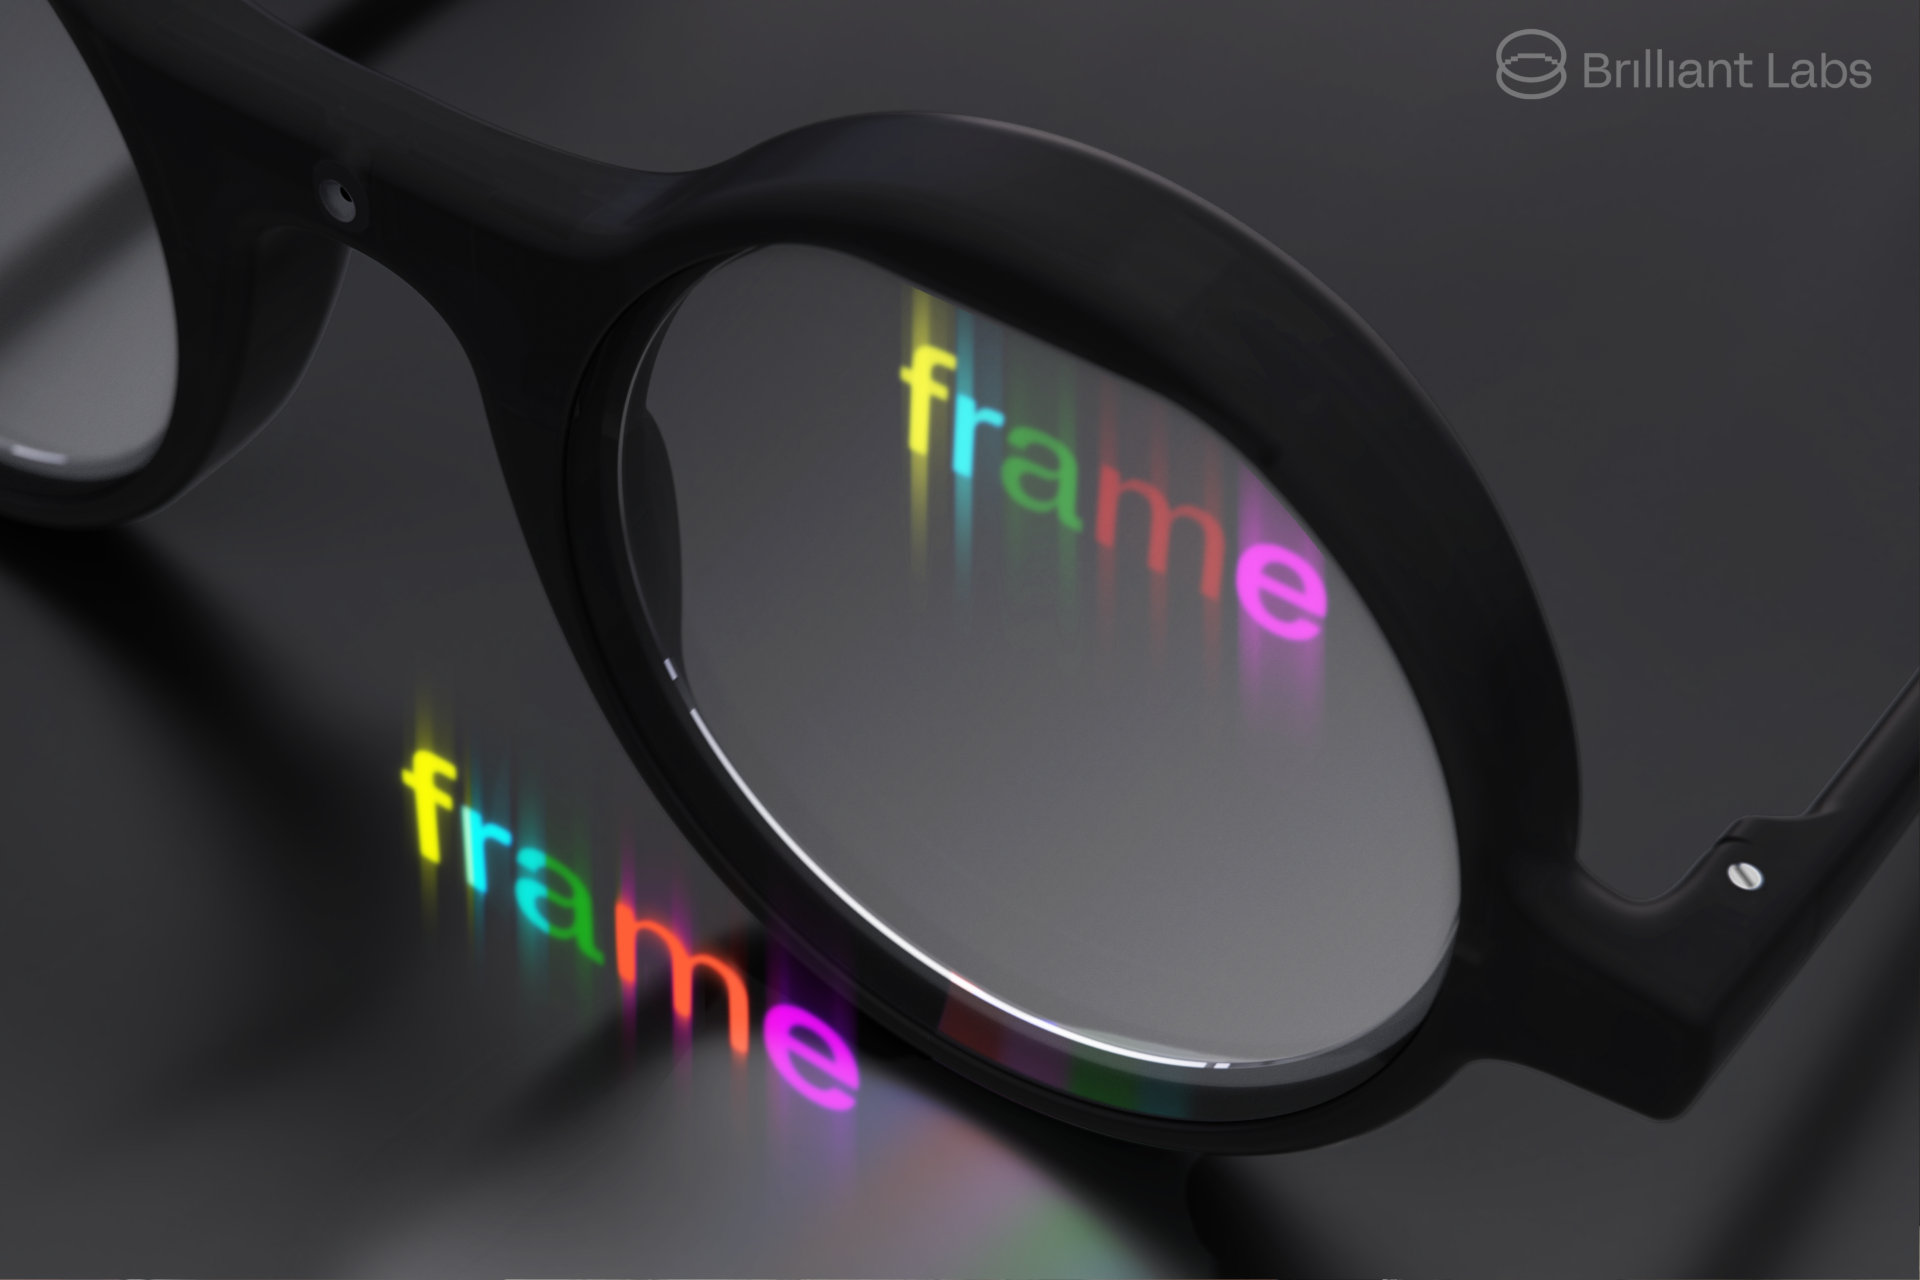 نمای نزدیک عینک هوشمند Brilliant Labs Frame با تصویر شبیه سازی شده روی نمایشگر.